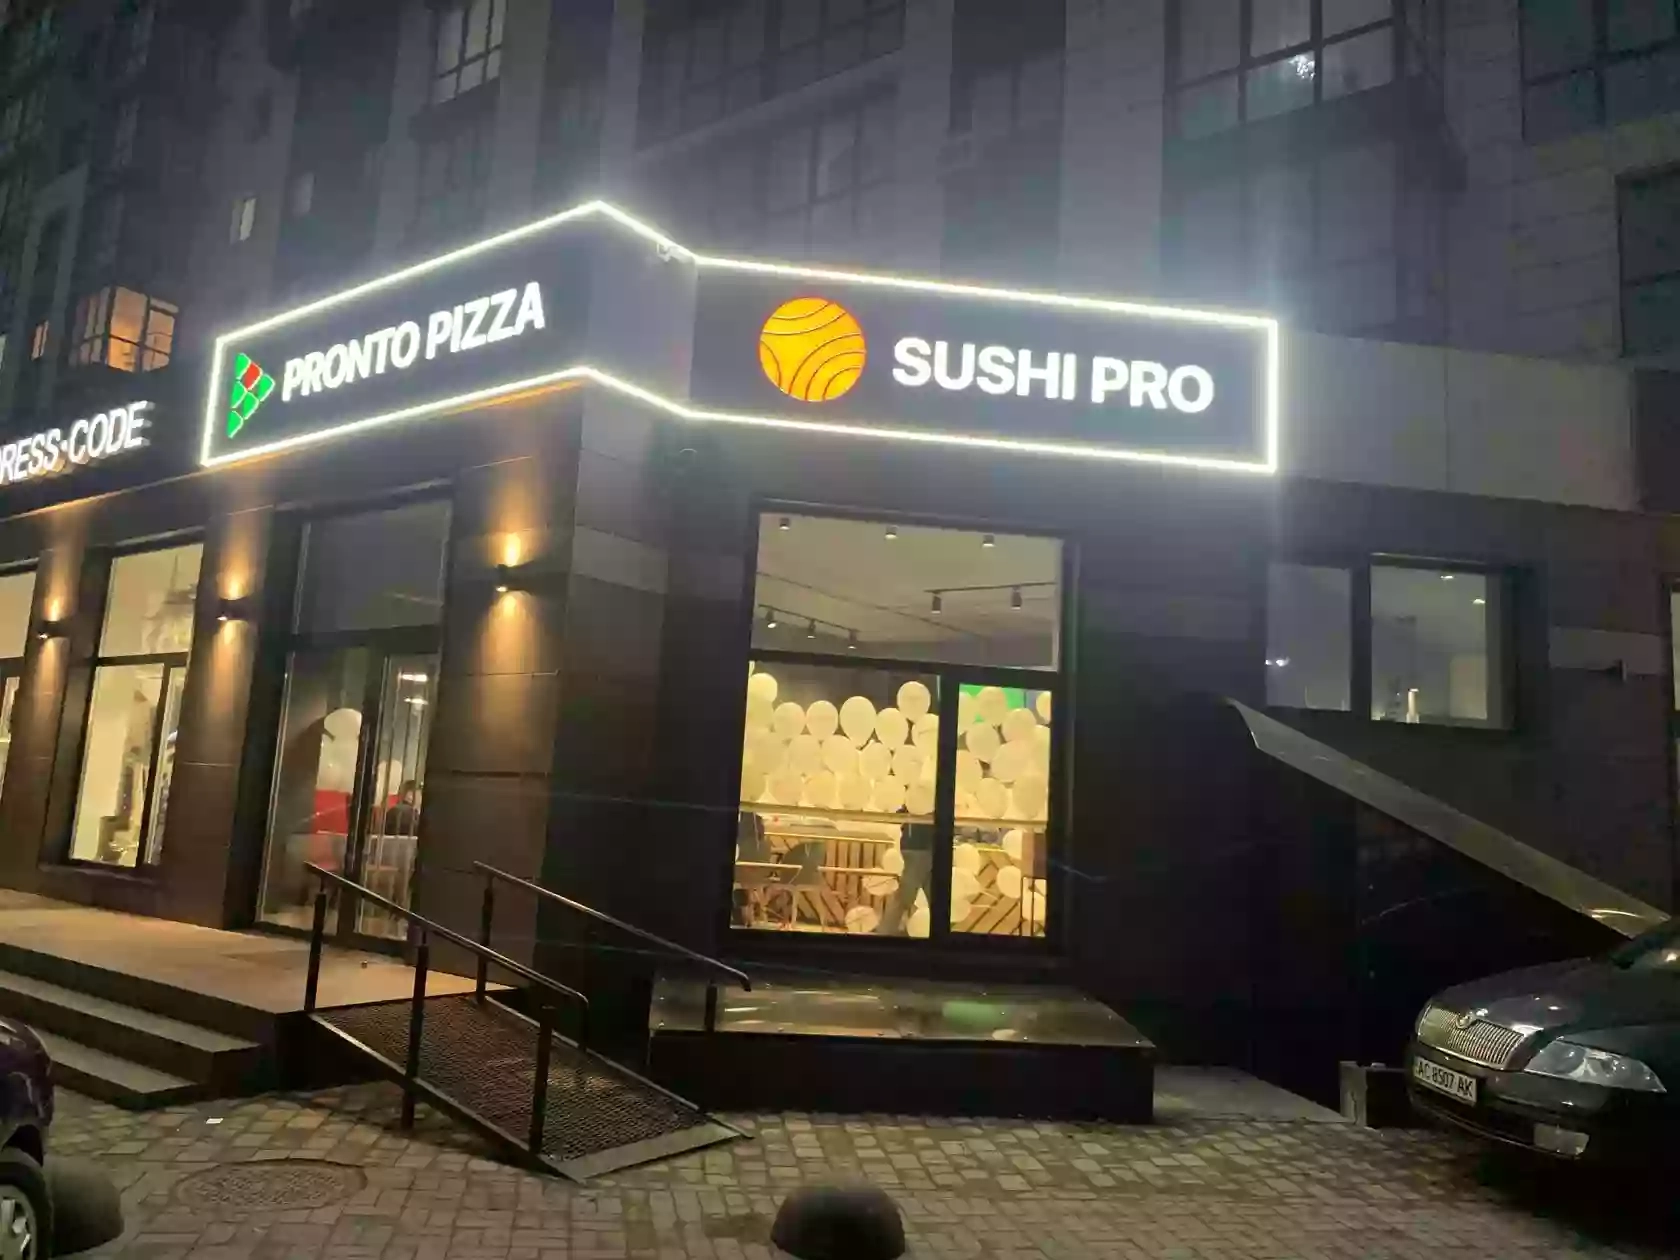 Пронто Піца • Pronto Pizza | Суші Про • Sushi Pro (Безкоштовна доставка піци та суші Луцьк)